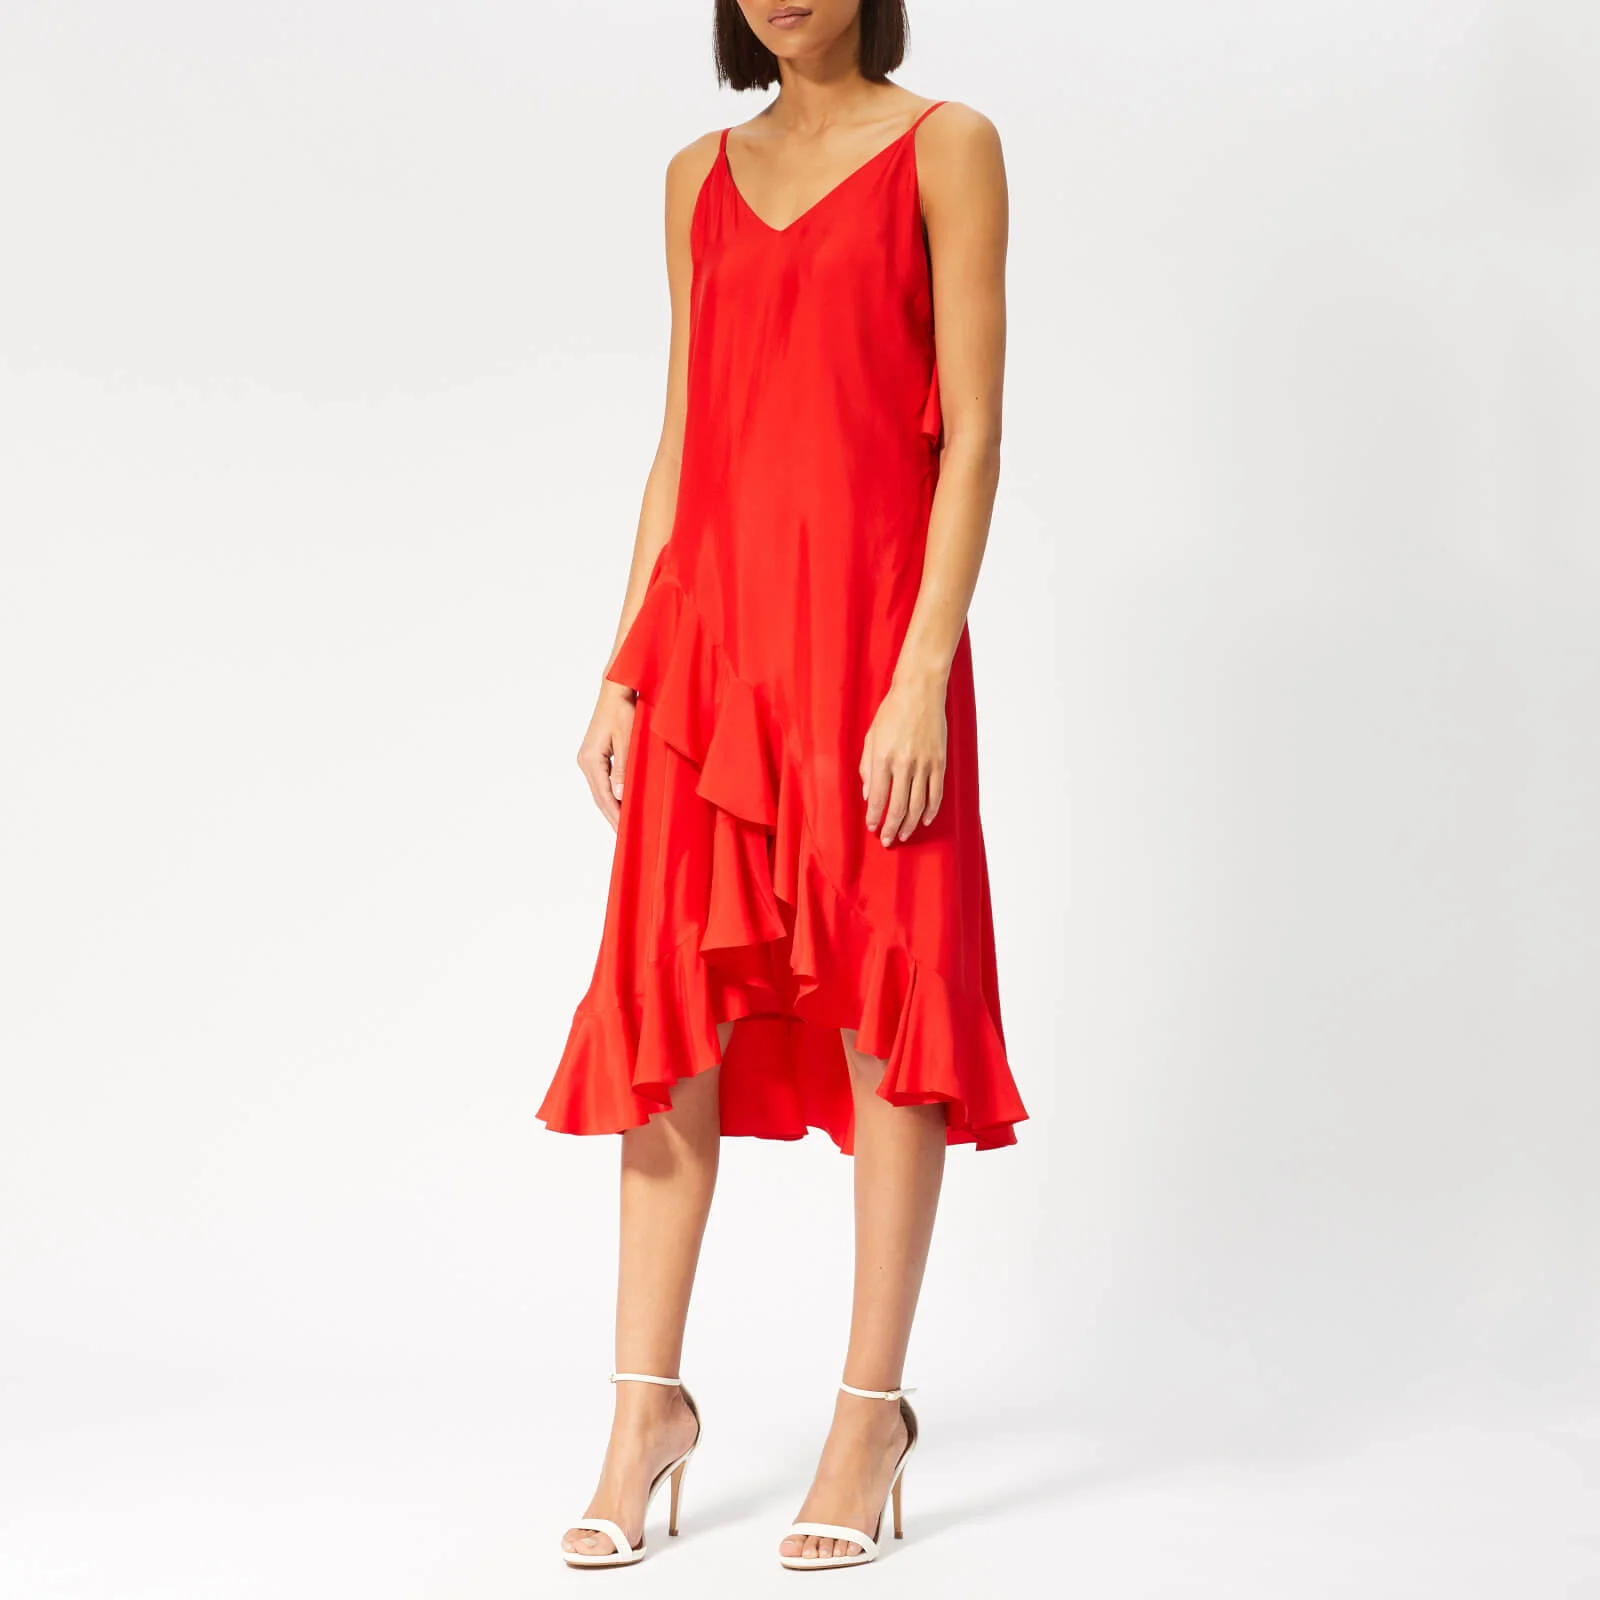 KENZO Women's Long Slip Dress with Ruffles - Medium Red Image 1